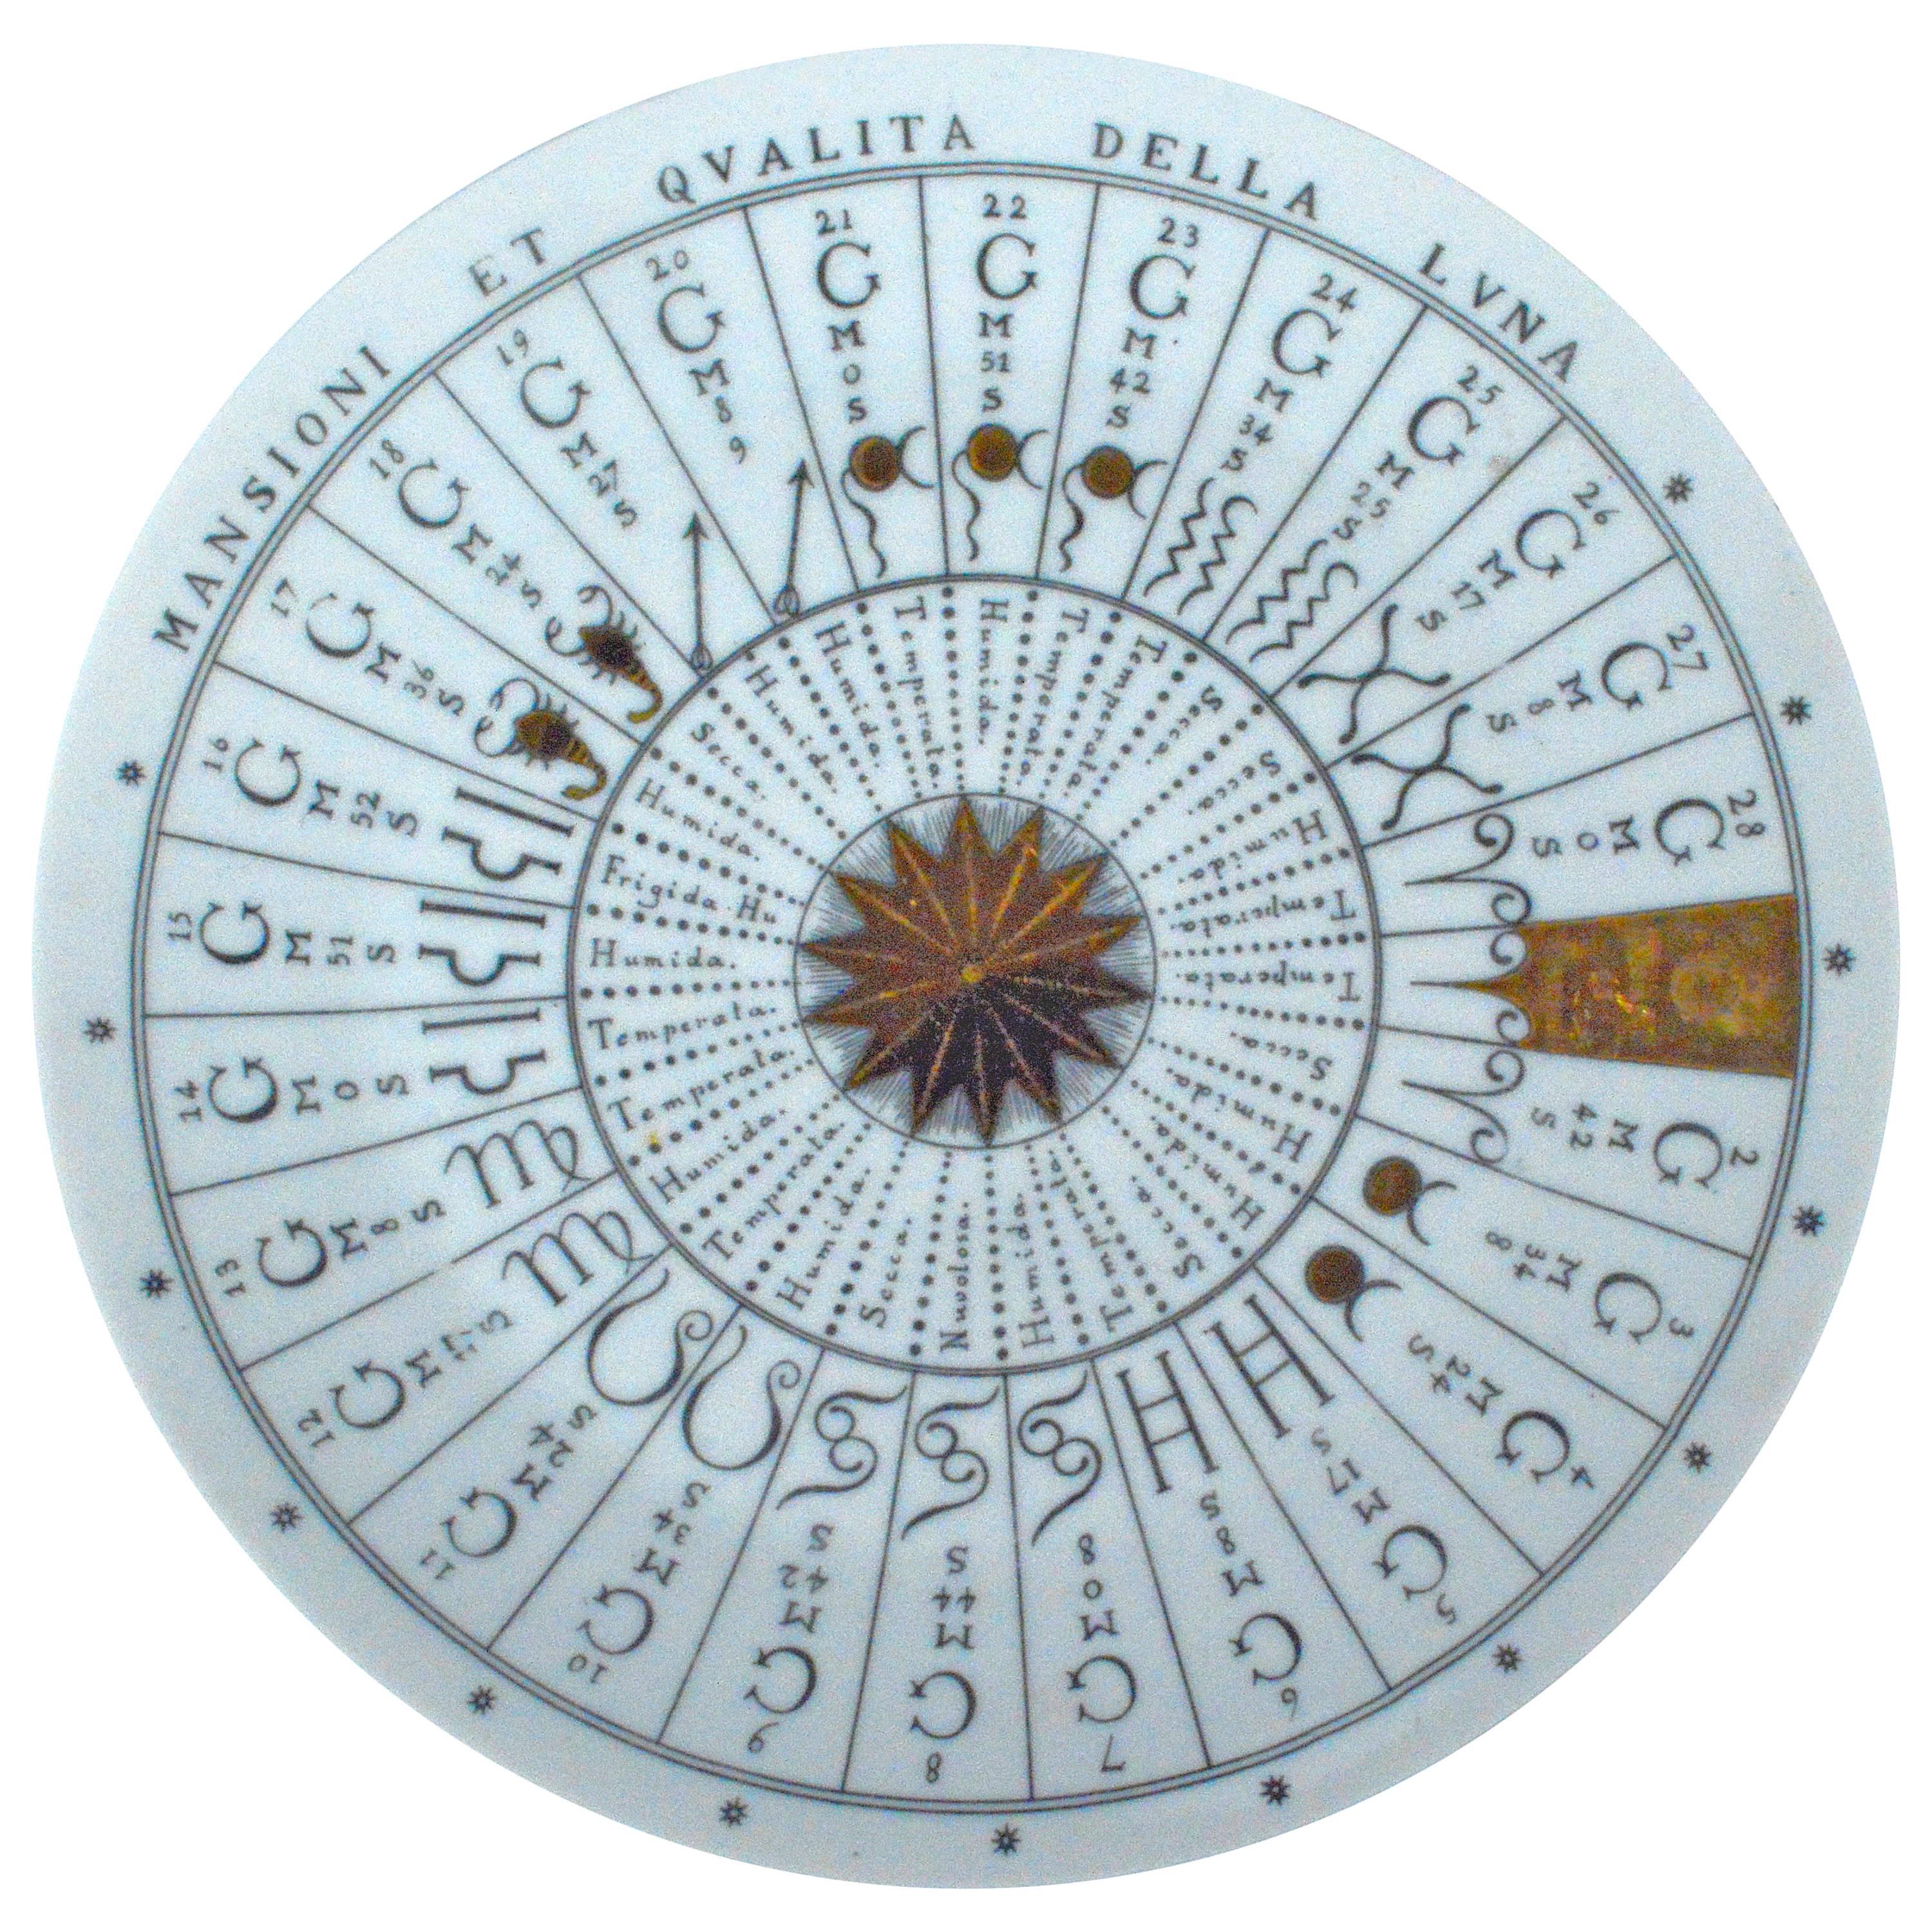 Piero Fornasetti Astronomici Plate, #4 in Series